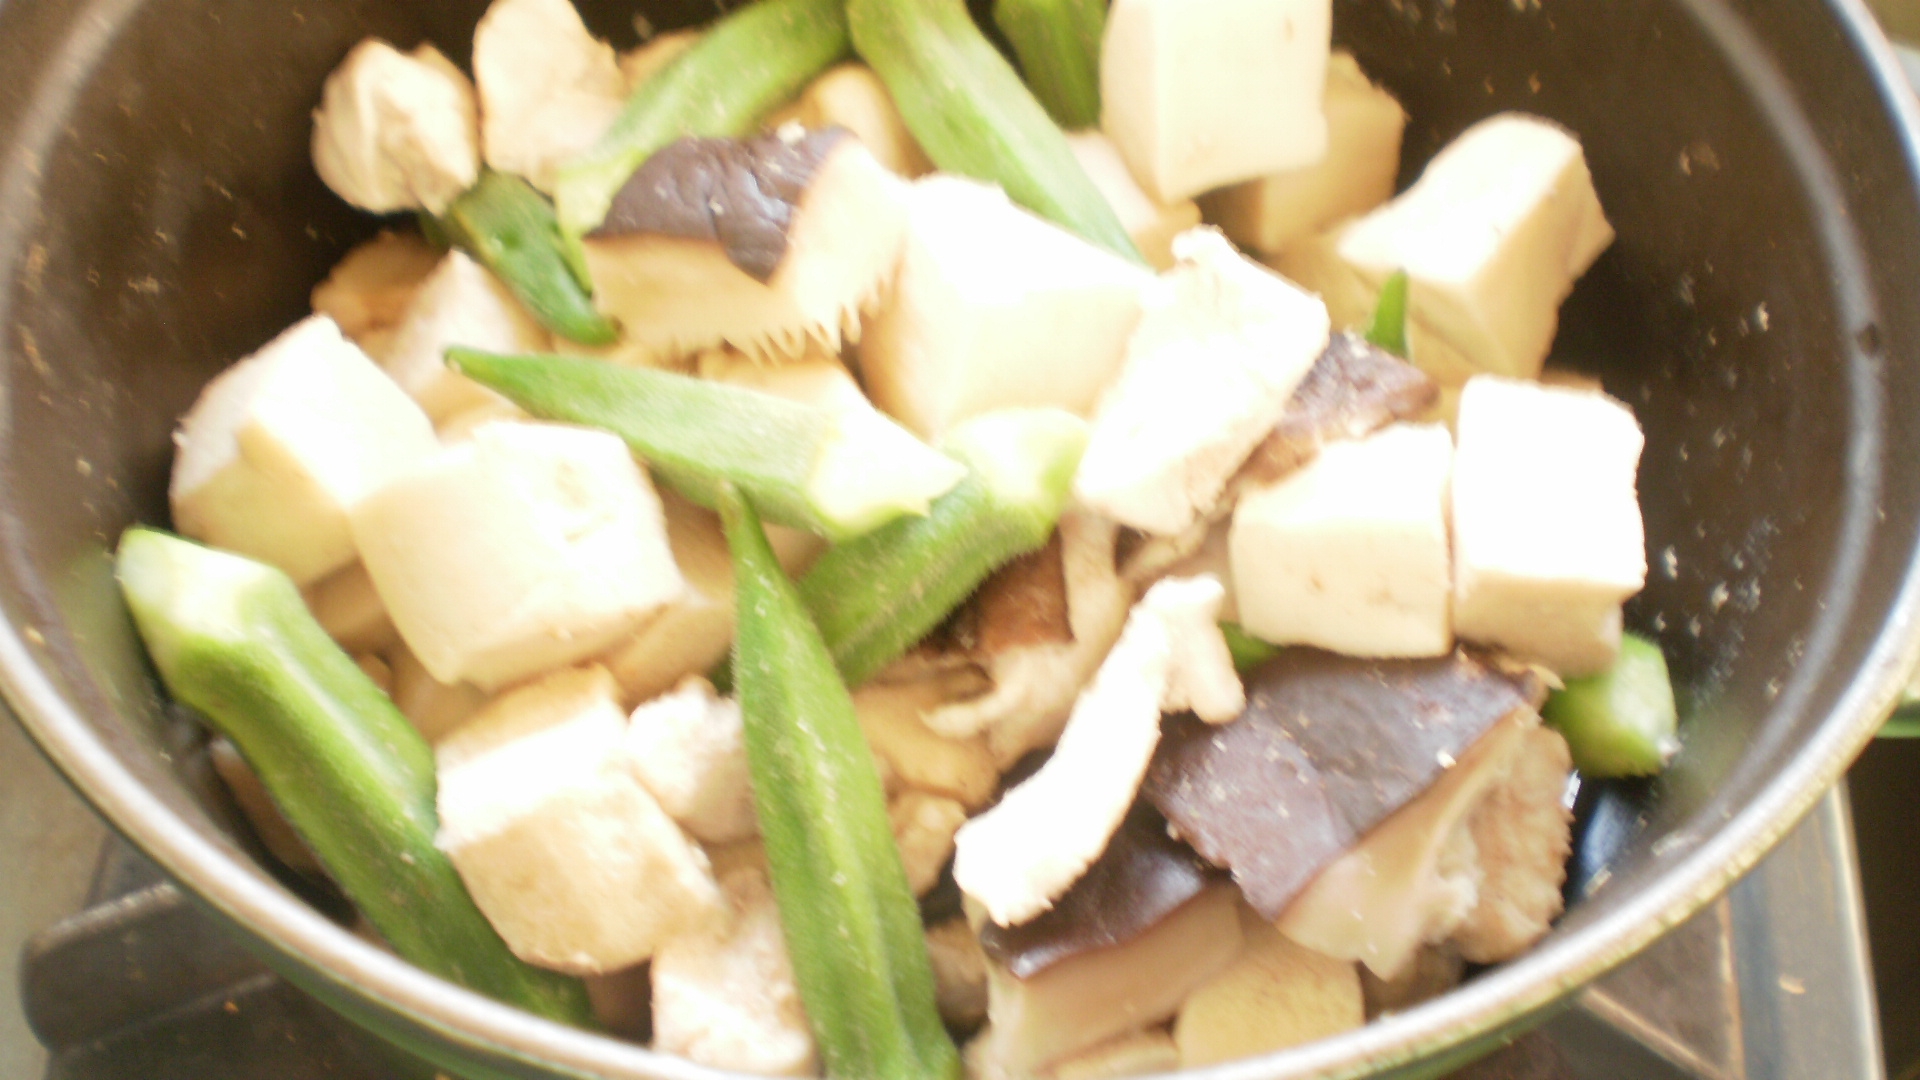 オクラと高野豆腐の干し椎茸煮